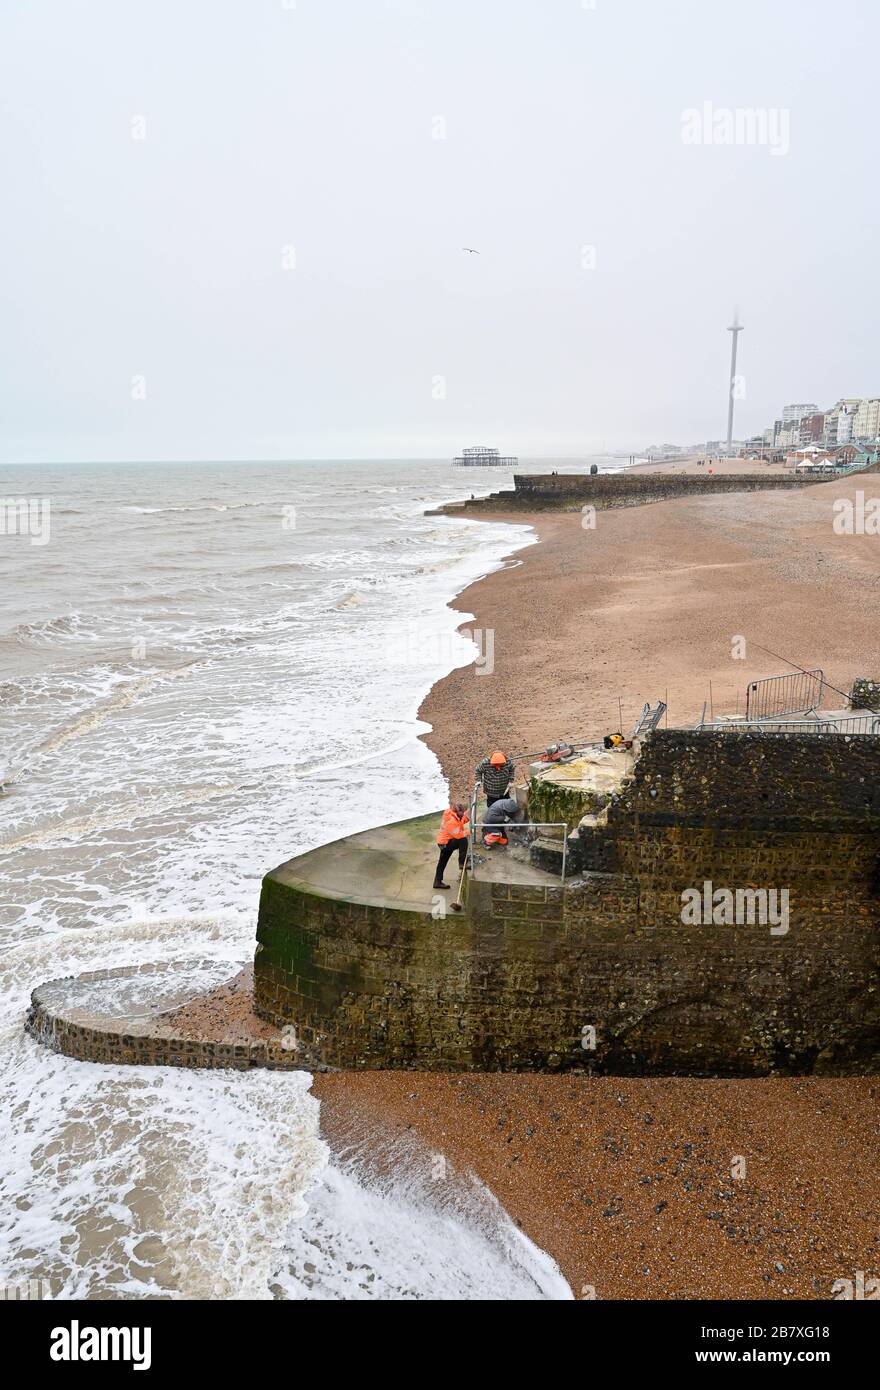 Lavori di riparazione in corso sulla spiaggia di Brighton, presso il molo del Palace Pier, che è stato danneggiato dalle recenti tempeste invernali nel Regno Unito Foto Stock